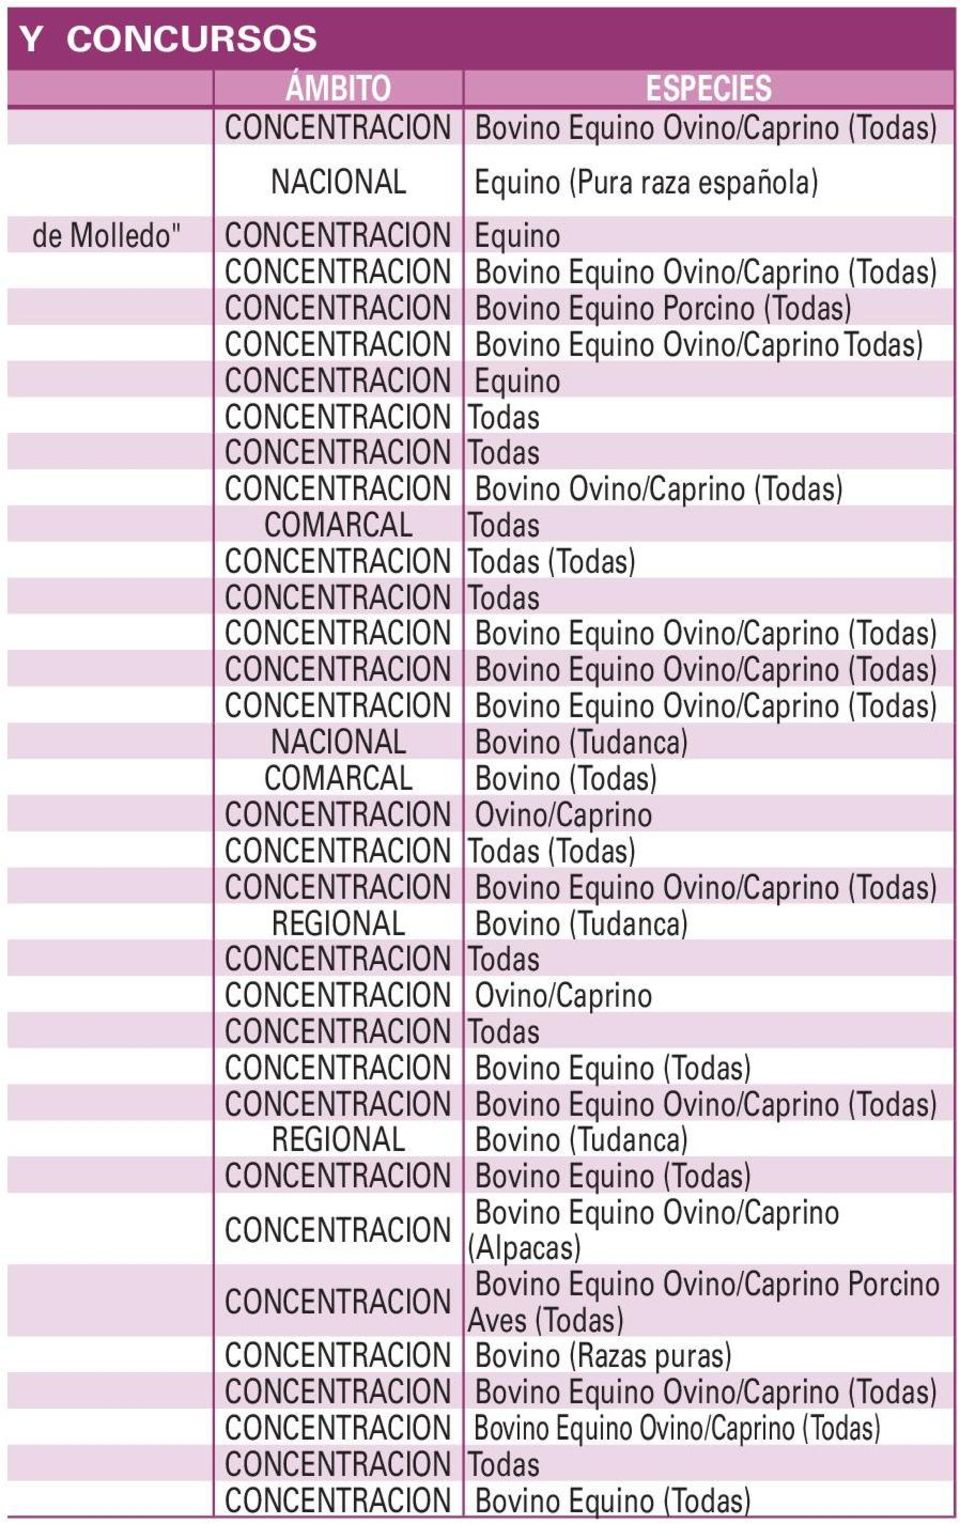 Ovino/Caprino (Todas) REGIONAL Bovino (Tudanca) CONCENTRACION Ovino/Caprino CONCENTRACION Bovino Equino (Todas) REGIONAL Bovino (Tudanca) CONCENTRACION Bovino Equino (Todas)